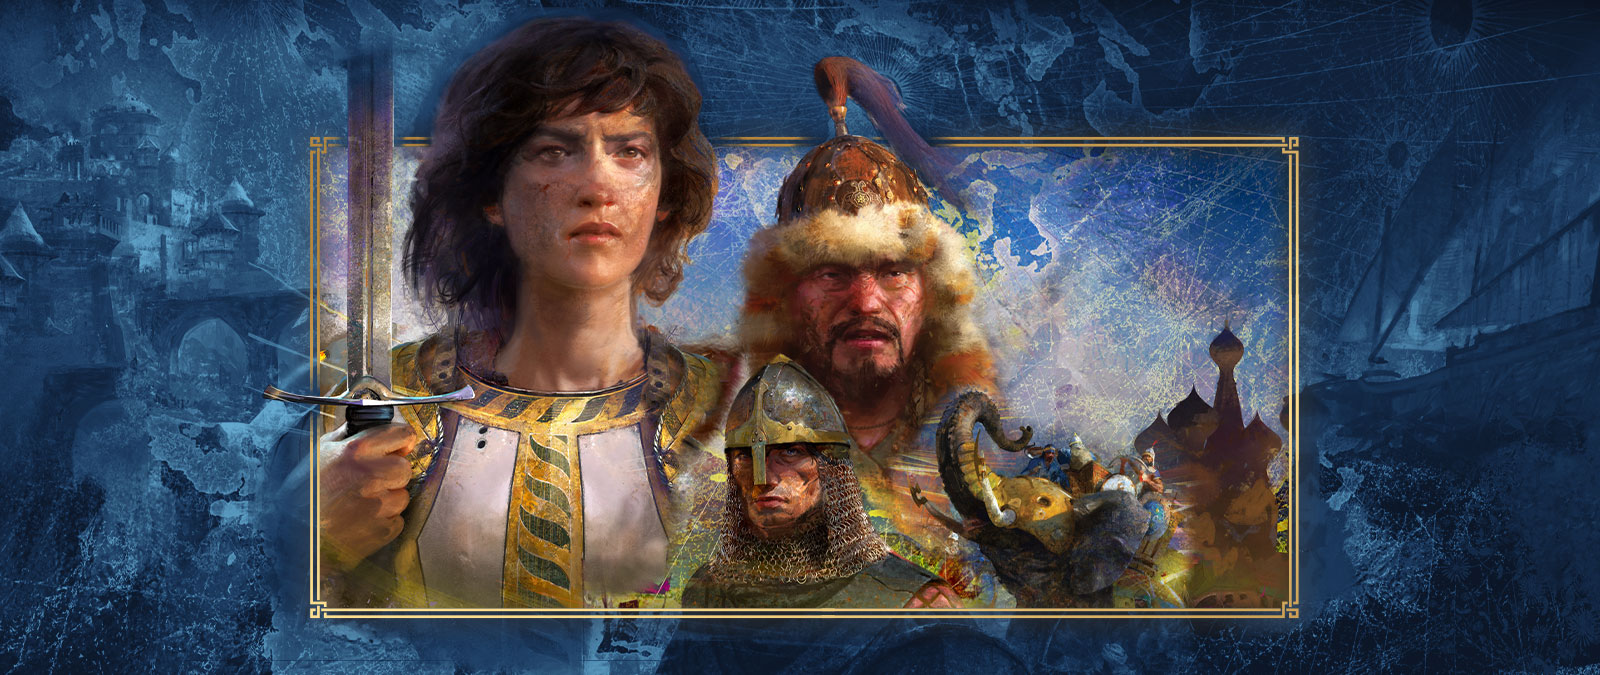 Несколько персонажей из разных цивилизаций позируют вместе на фоне изображений битвы.